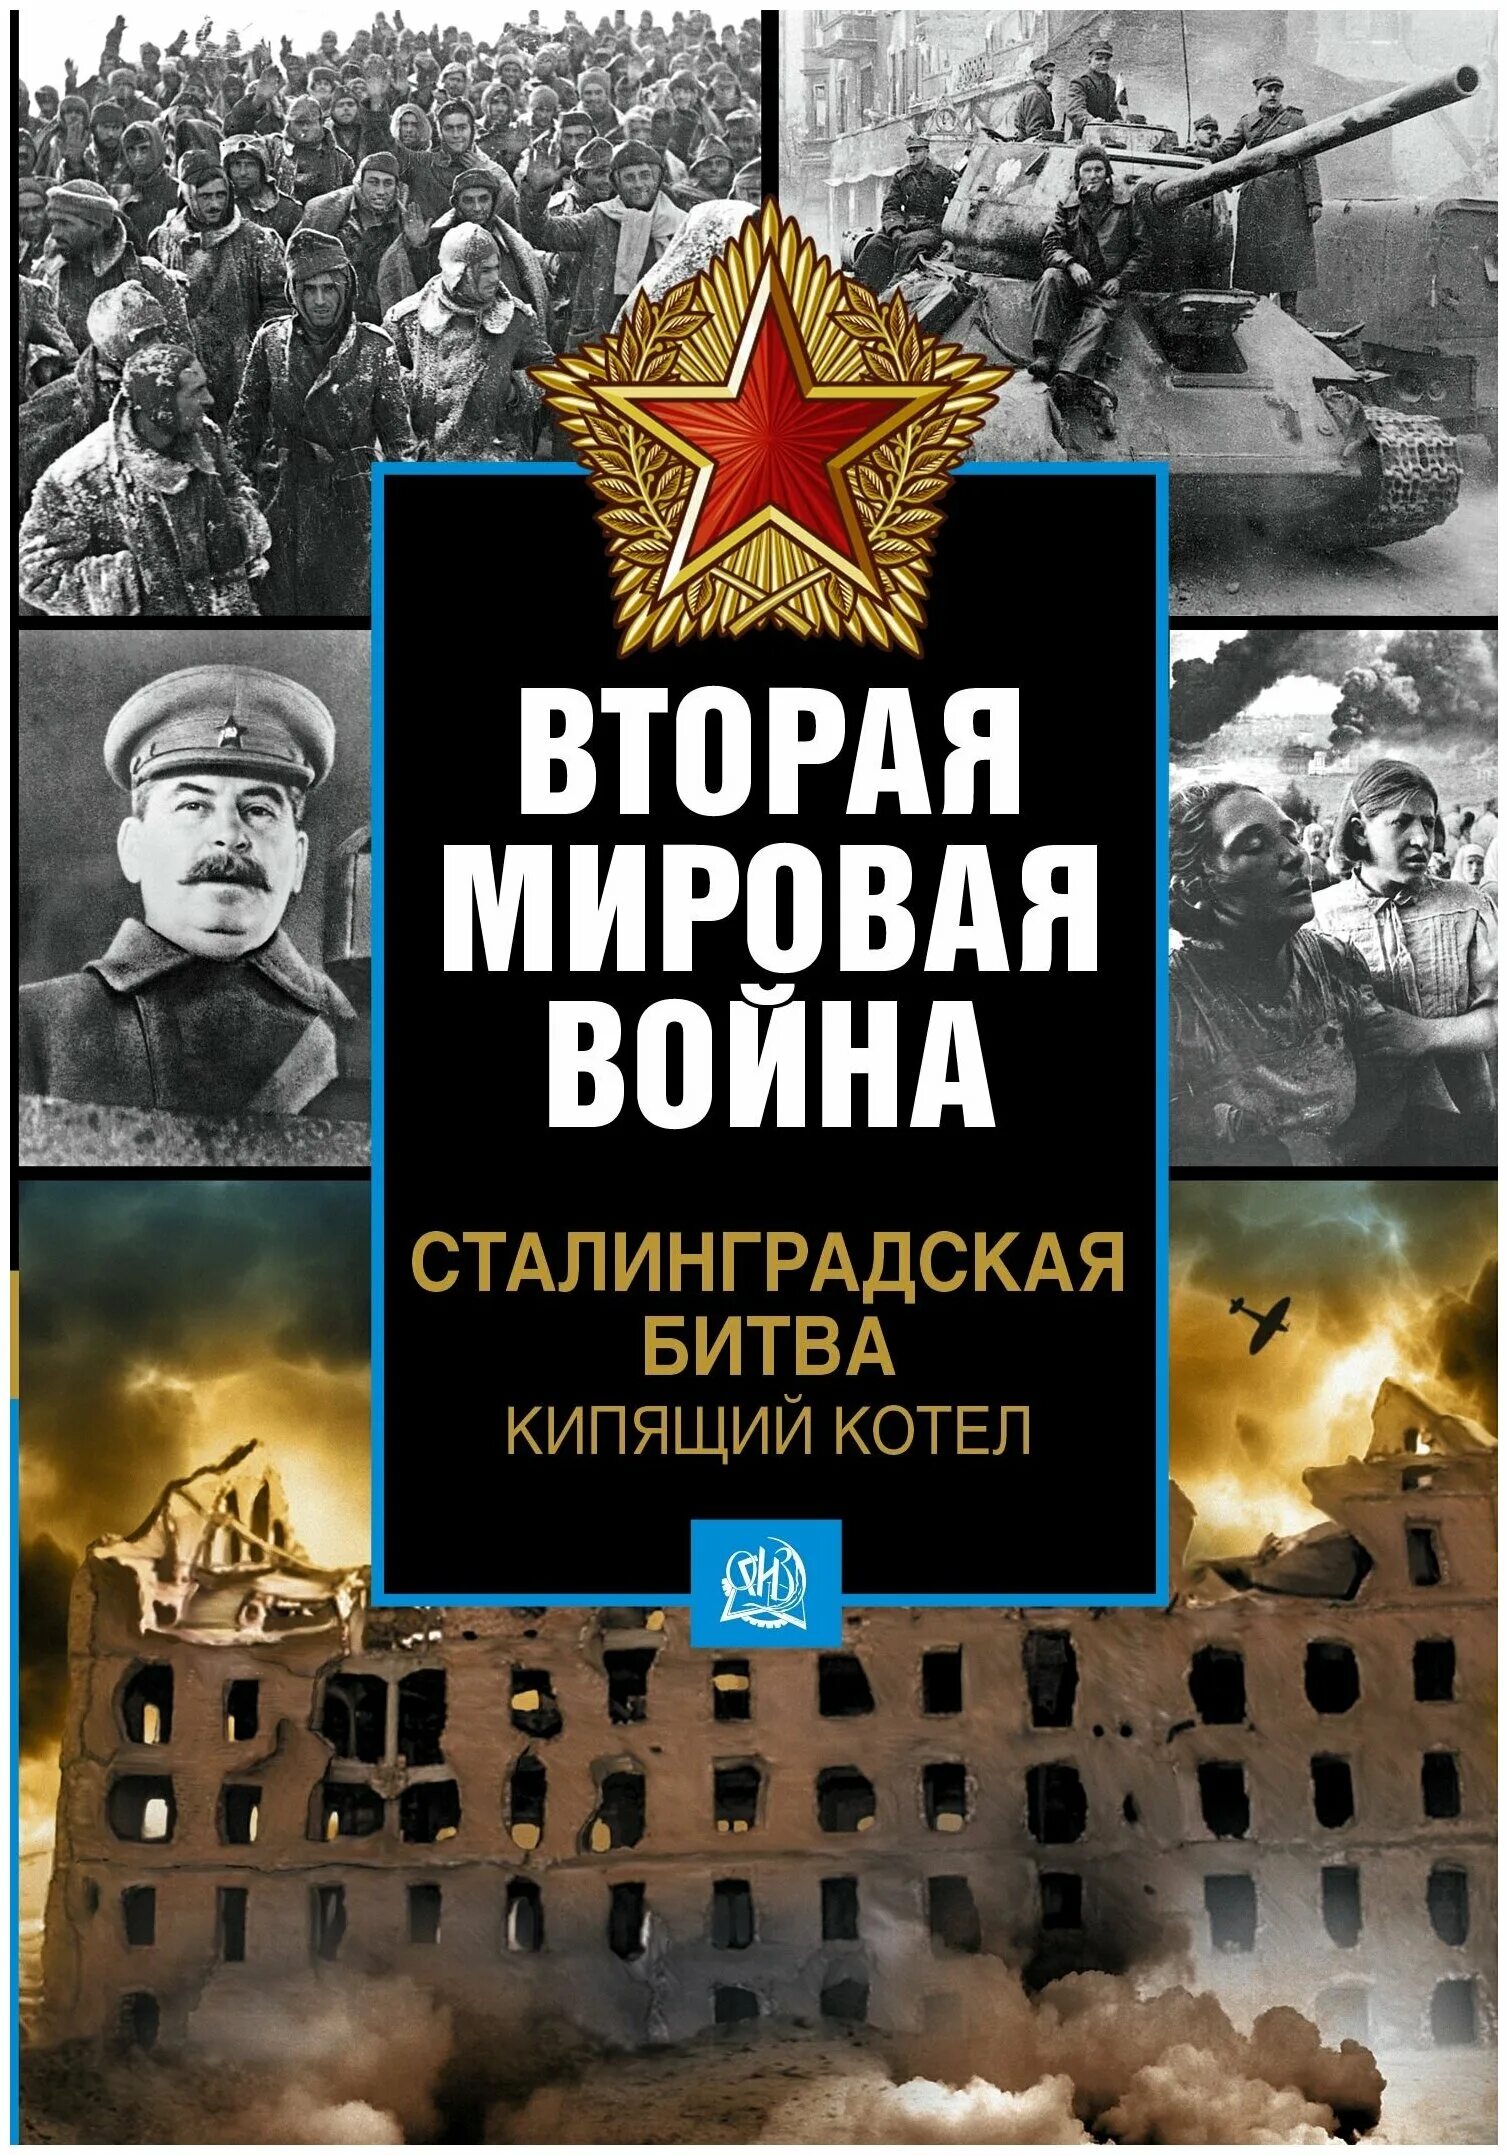 Читать книгу мировую войну. Книги о Сталинградской битве. Книги про Сталинград. Обложки книг о войне.